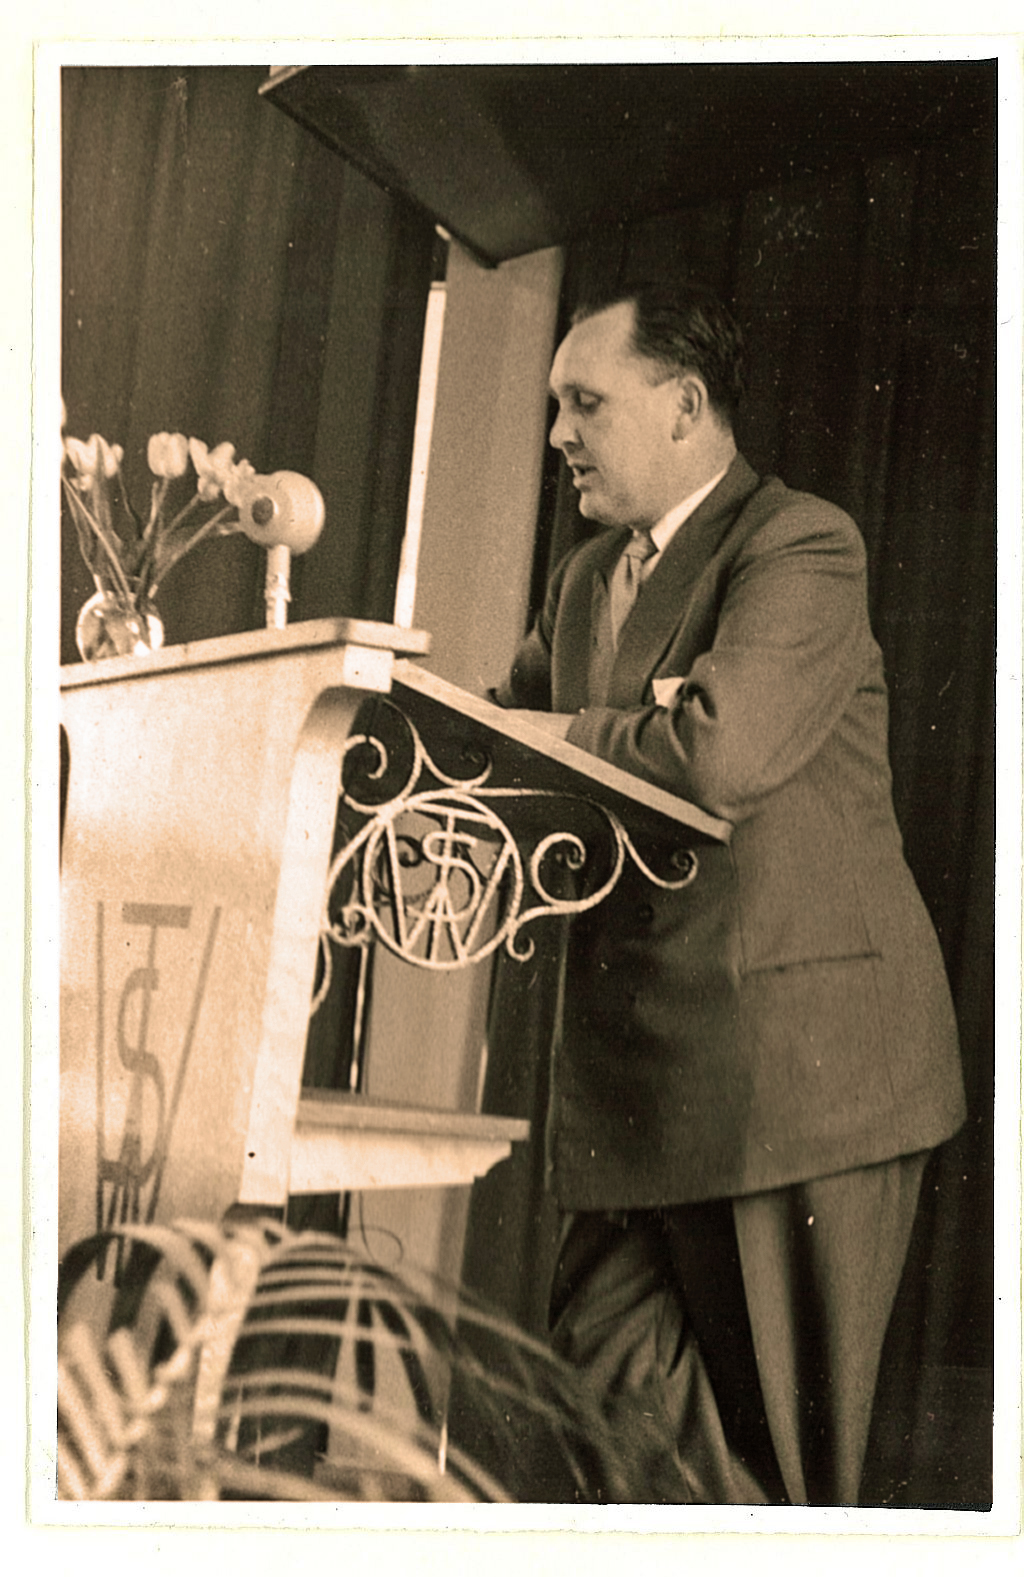 25 jarig jubileum van Jo Eigenhuijsen bij de Smit Elektrodenfabriek (1955)